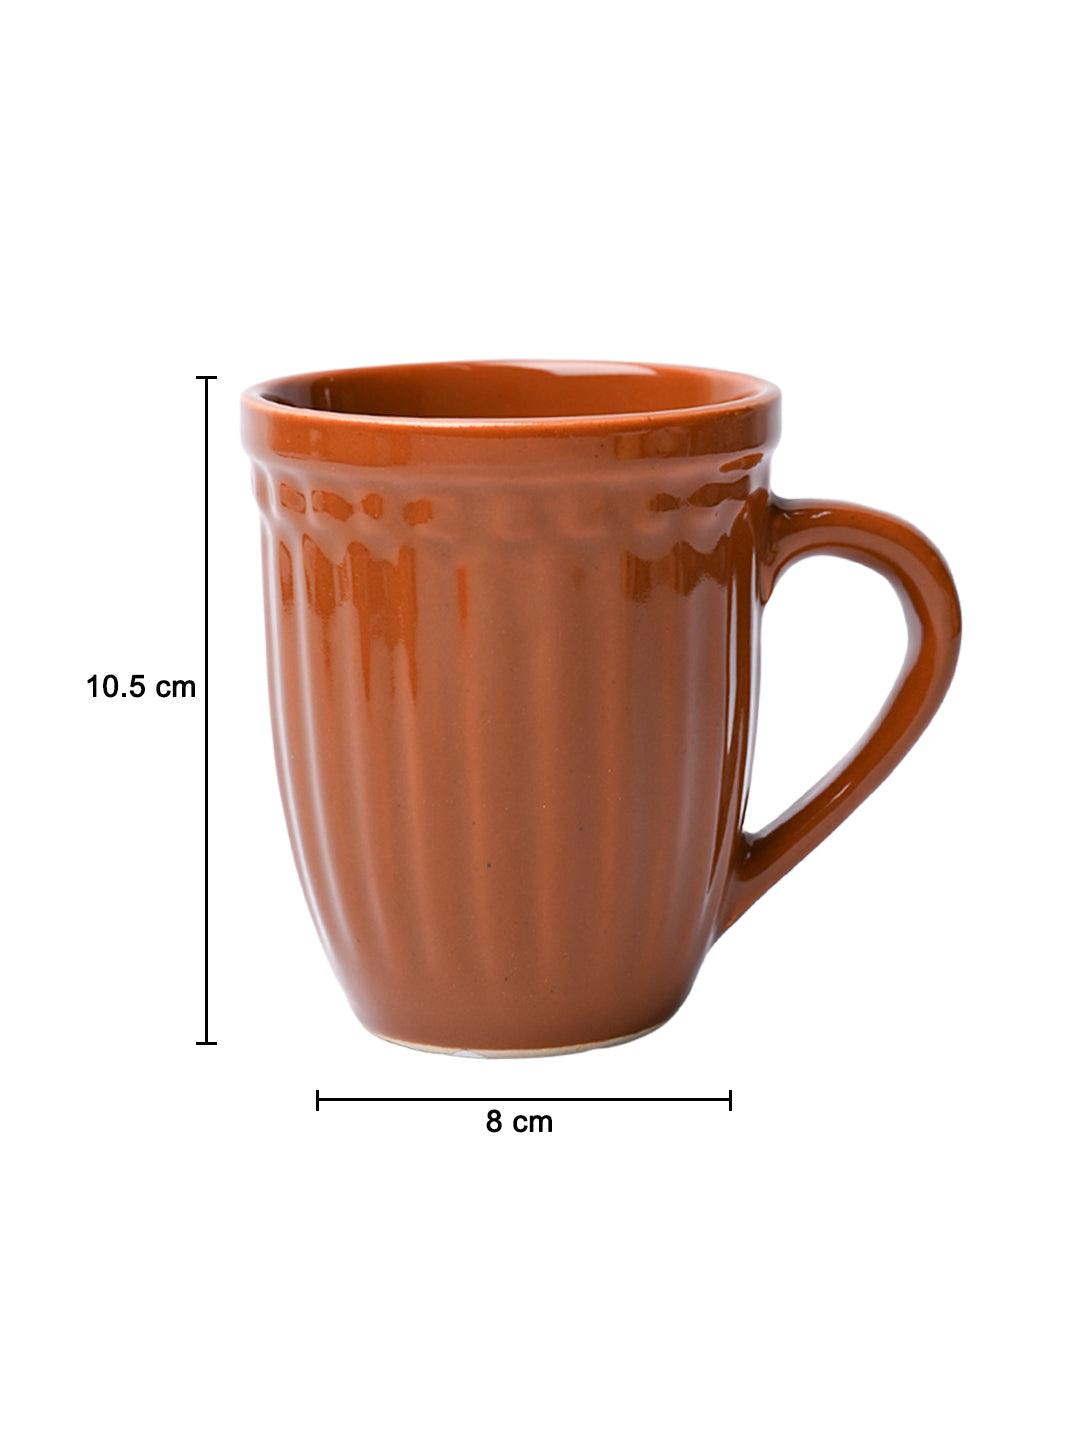 VON CASA Ceramic Coffee & Tea Mug - 300 Ml, Brown - MARKET99